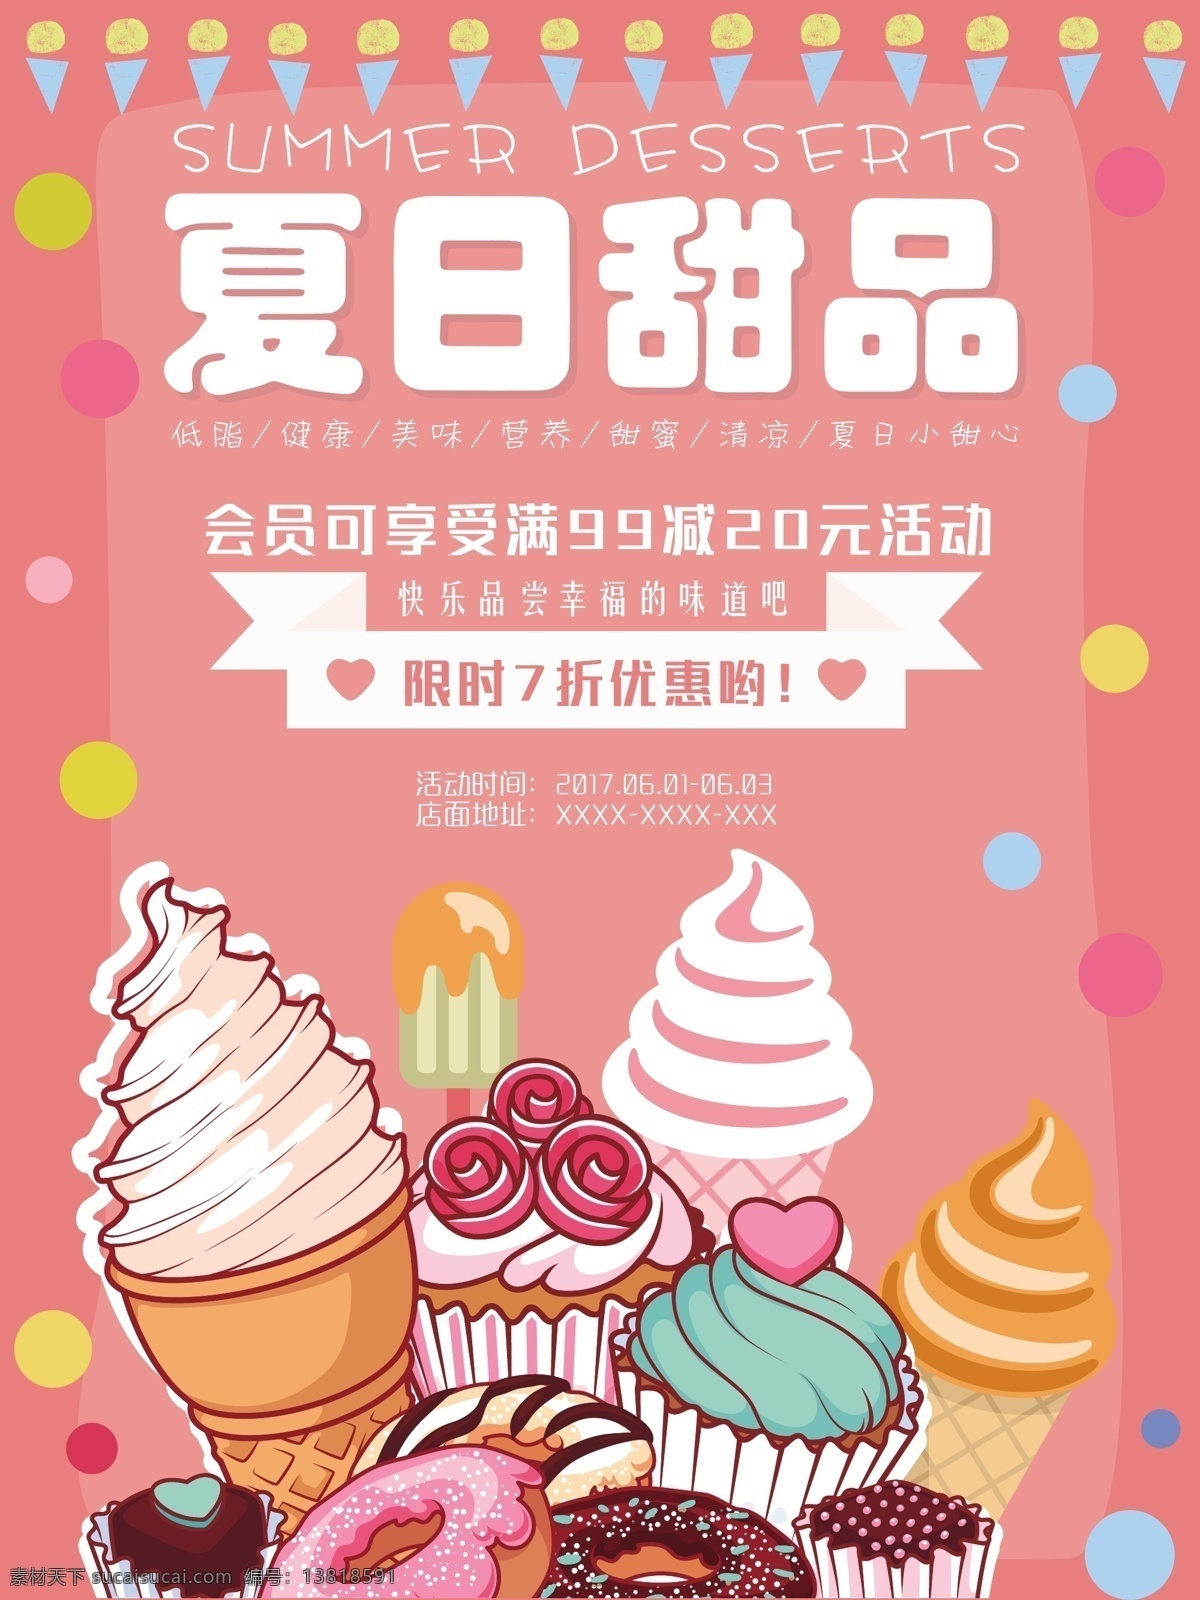 夏日 甜品 促销 打折 海报 甜点海报 夏日甜点 美味 蛋糕 冰淇淋 会员满减 打折优惠 粉色